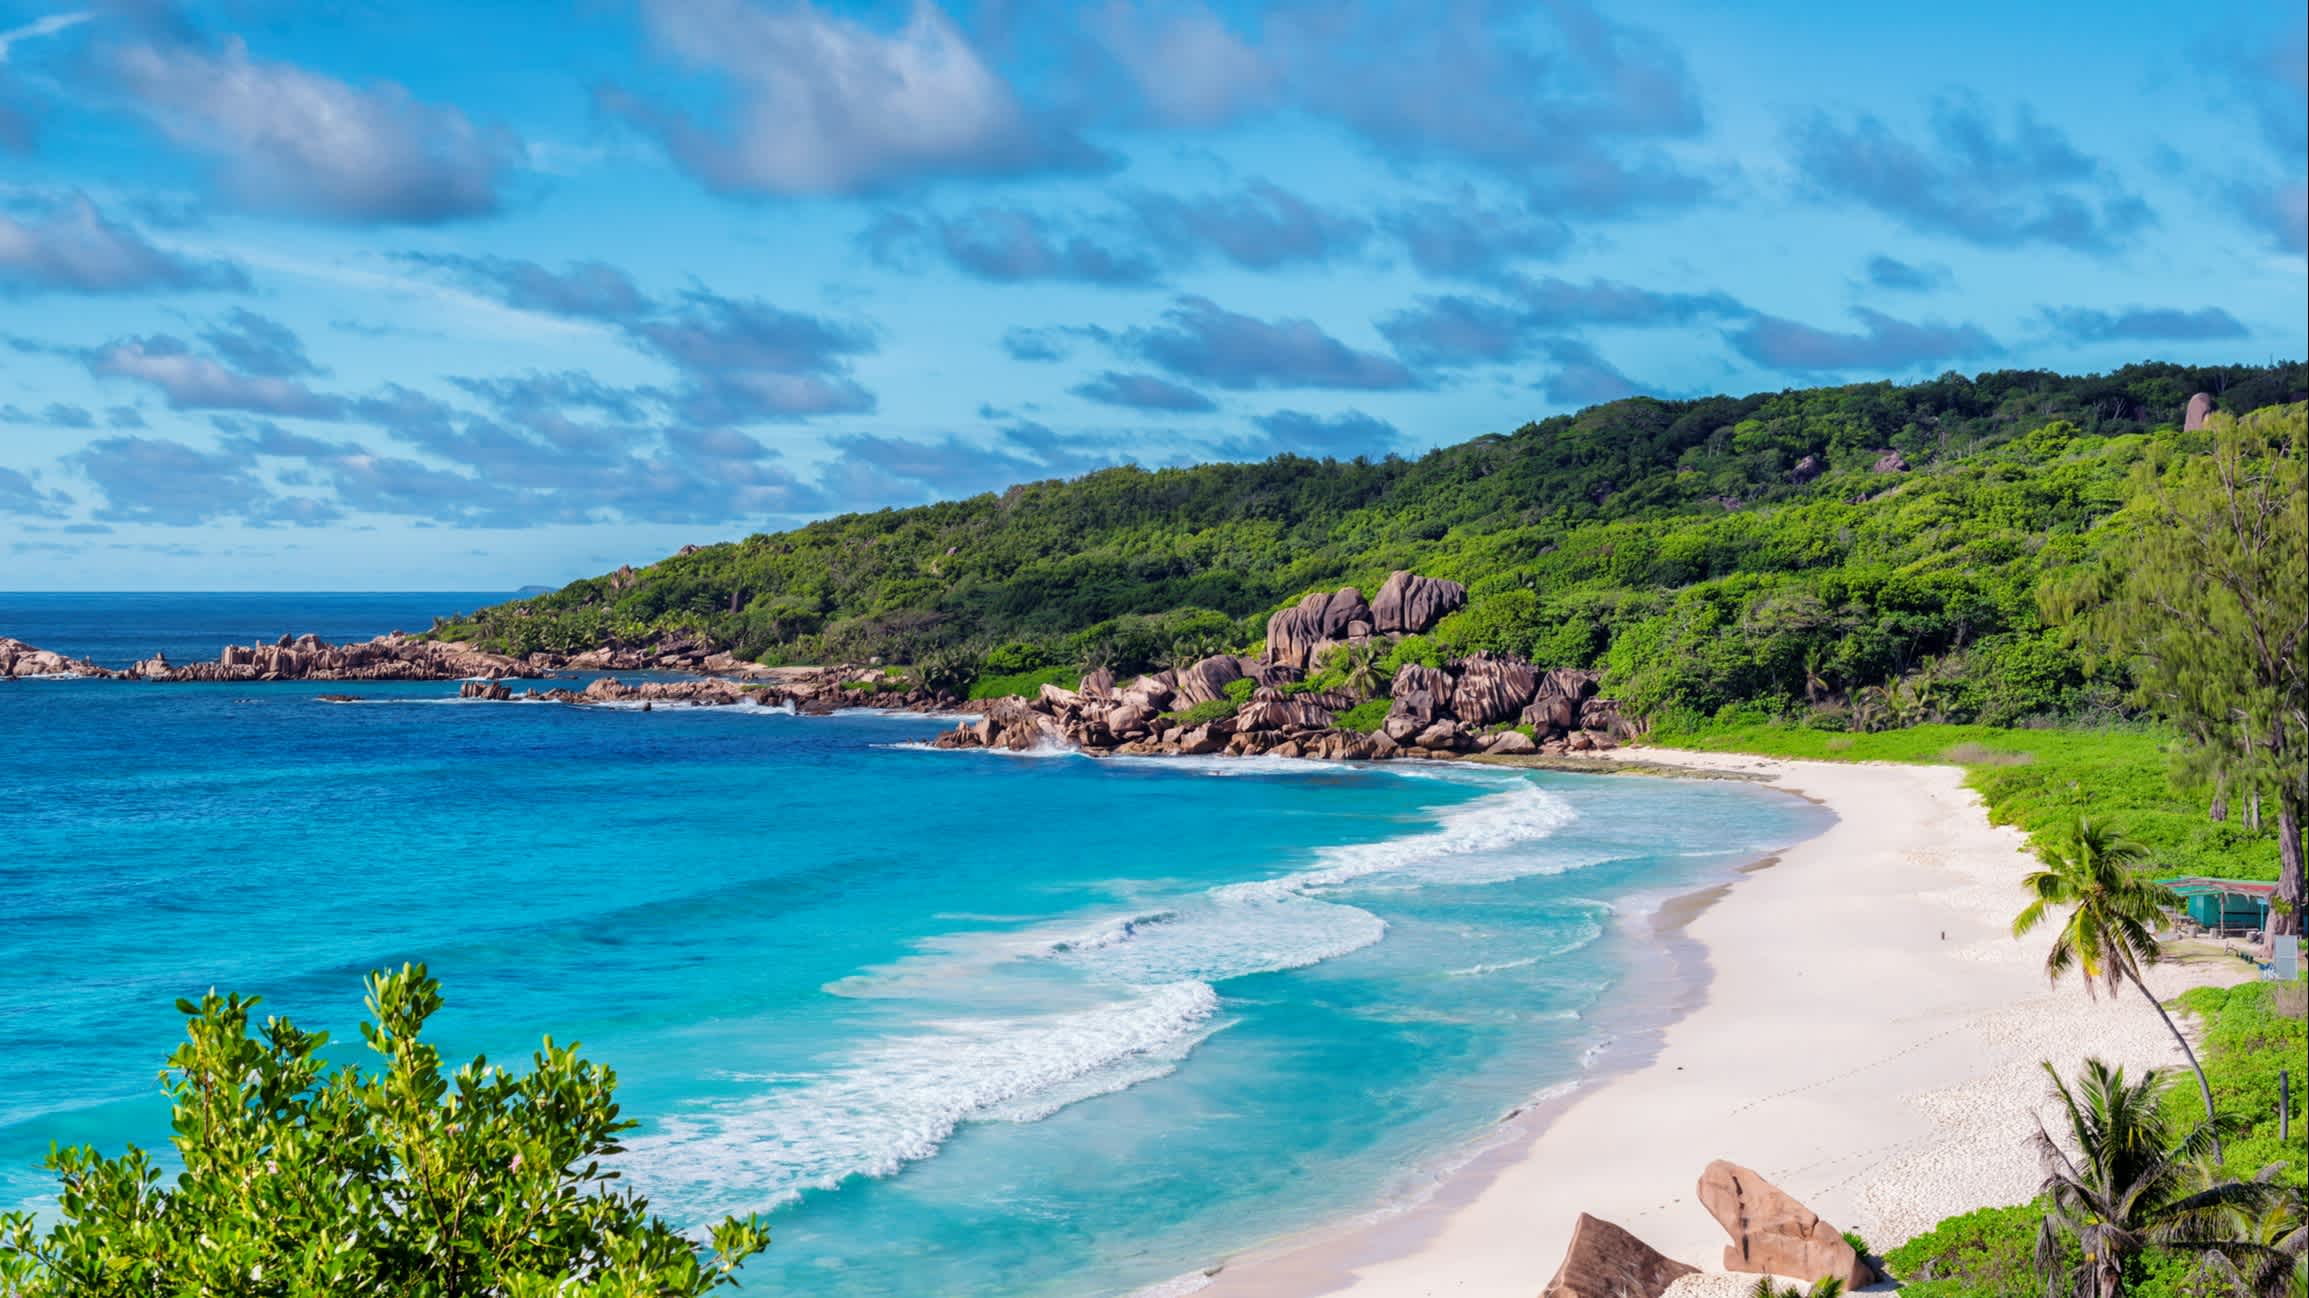 Blick von einem Aussichtspunkt aus auf den Strand Grand Anse auf den Seychellen, Insel La Digue bei herrlichem Sonnenschein und mit azurblauen Wellen und weißem Sand sowie üppiger Vegetation und Bergen.